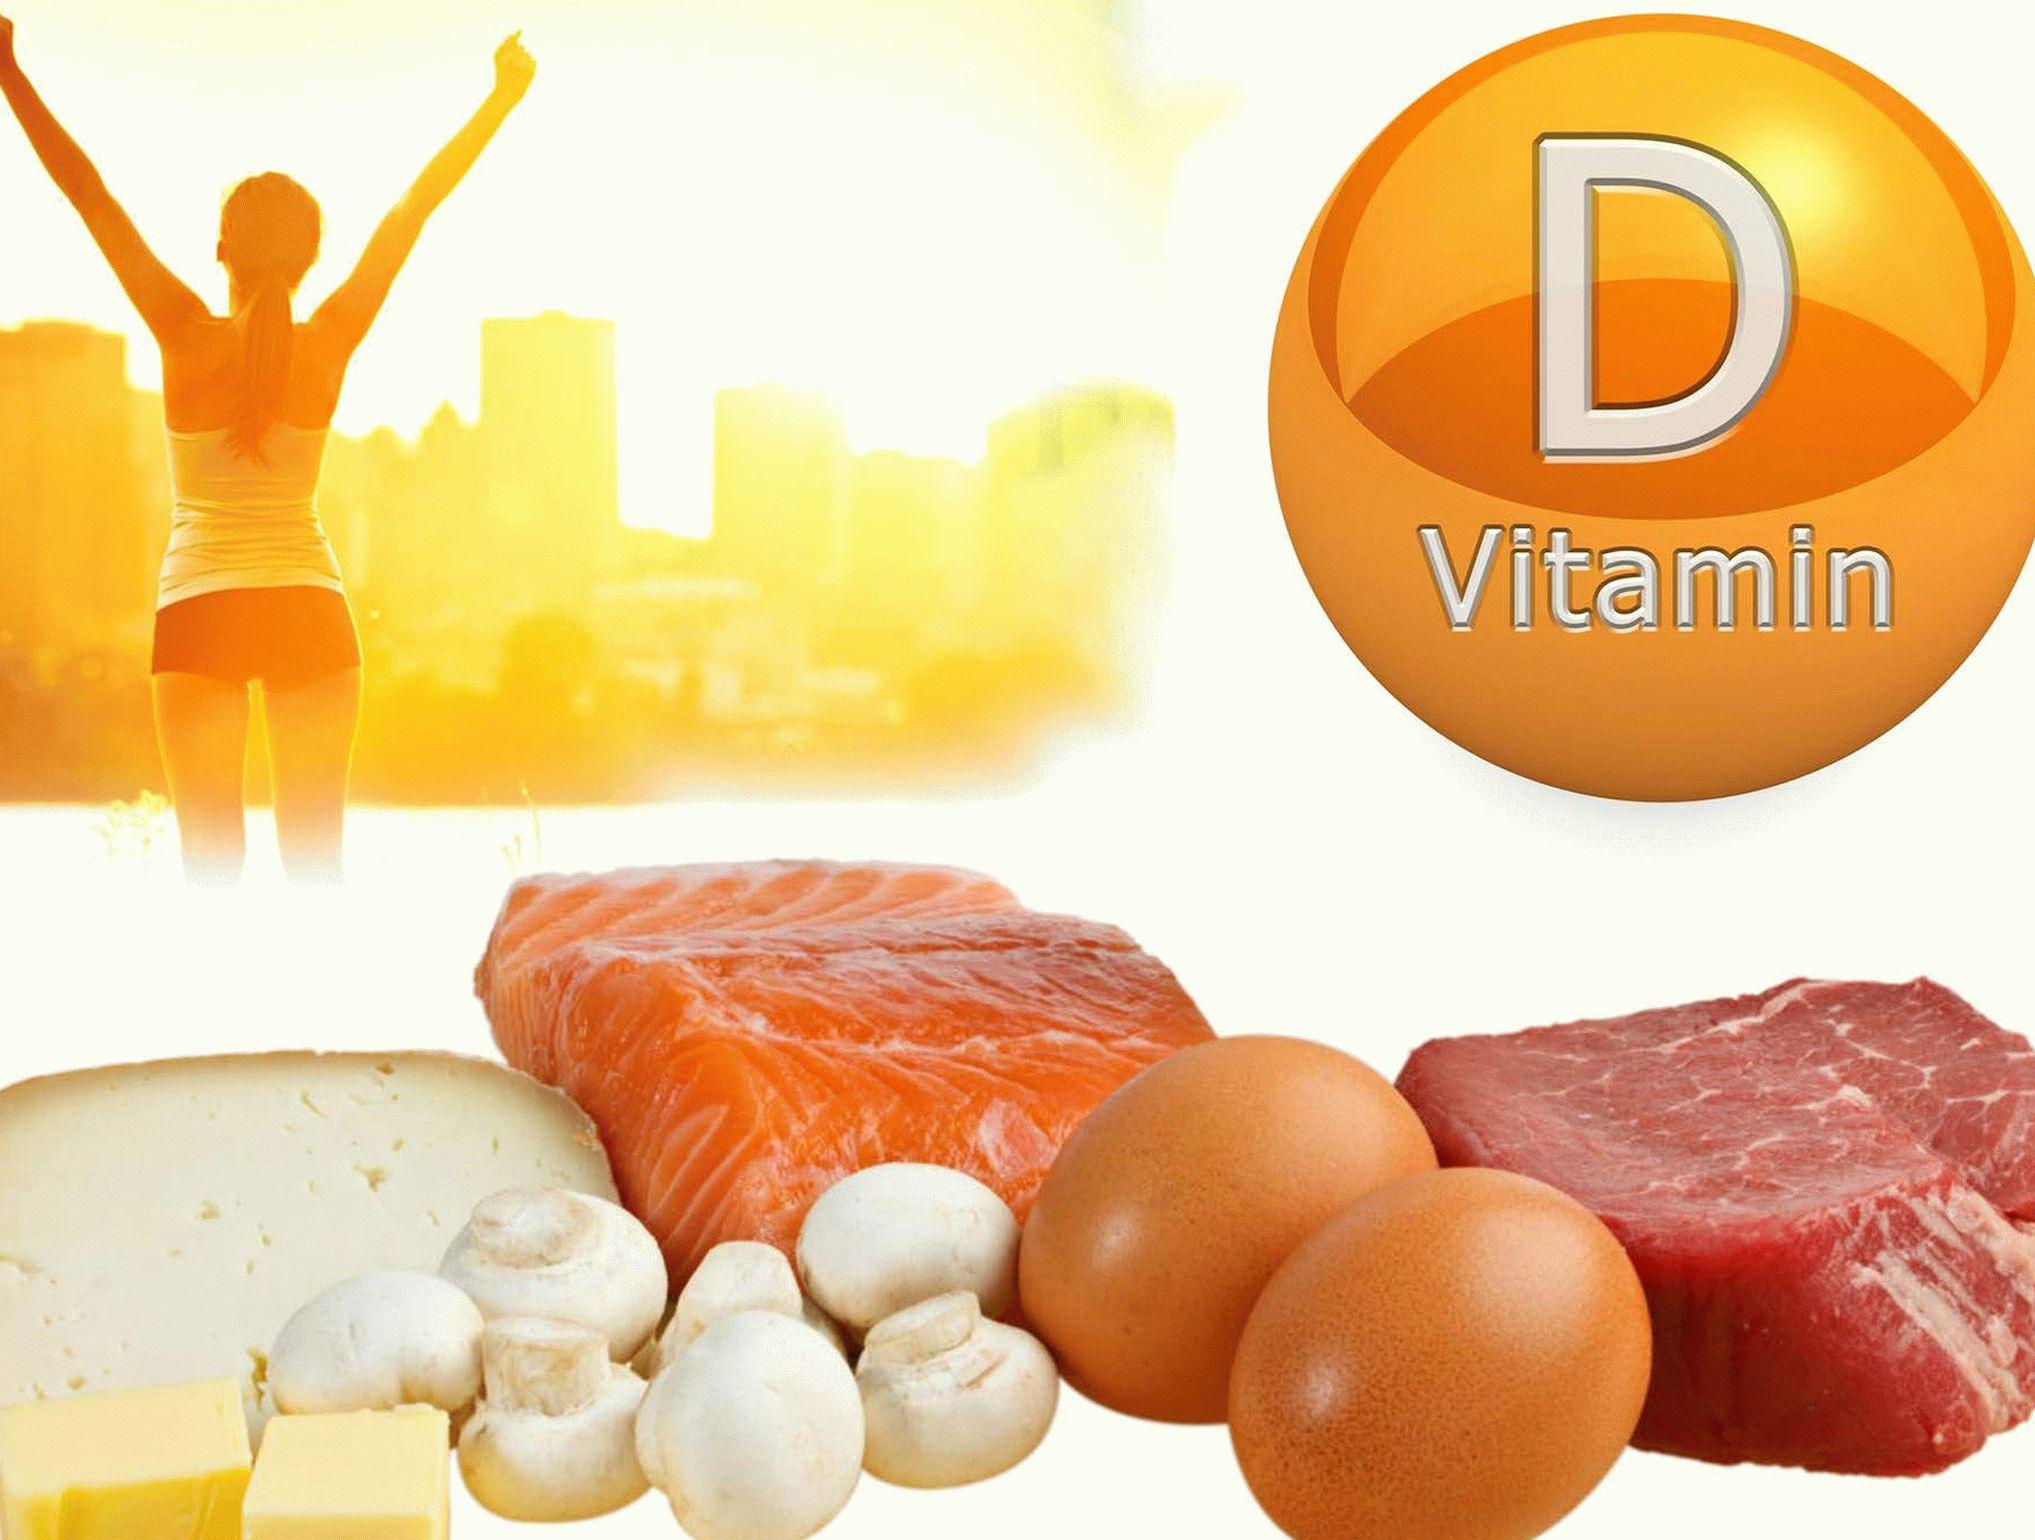 Vit vitamins. Витамин д. Источники витамина д. Вит д. Витамин d источники витамина для организма.